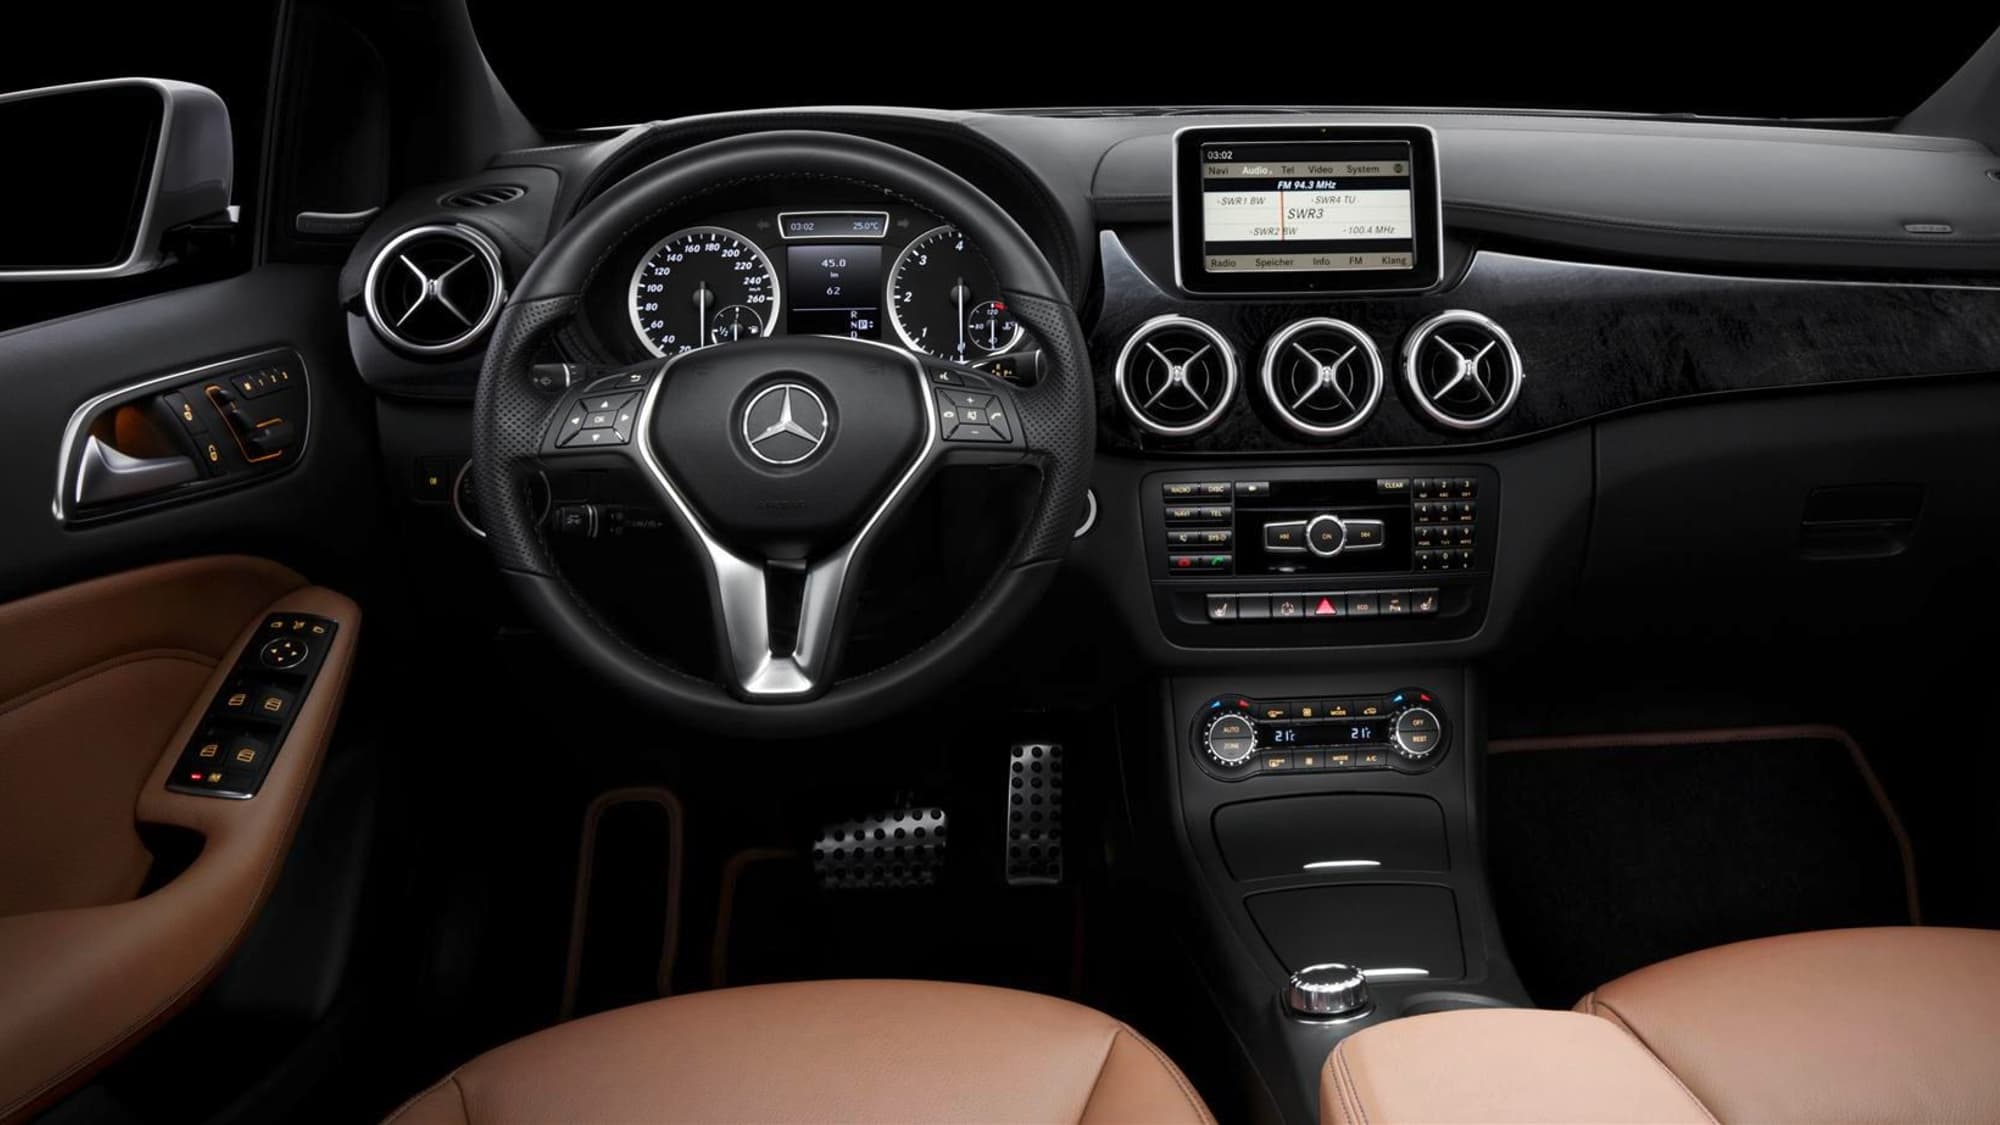 2012 Mercedes-Benz B-Class interior images